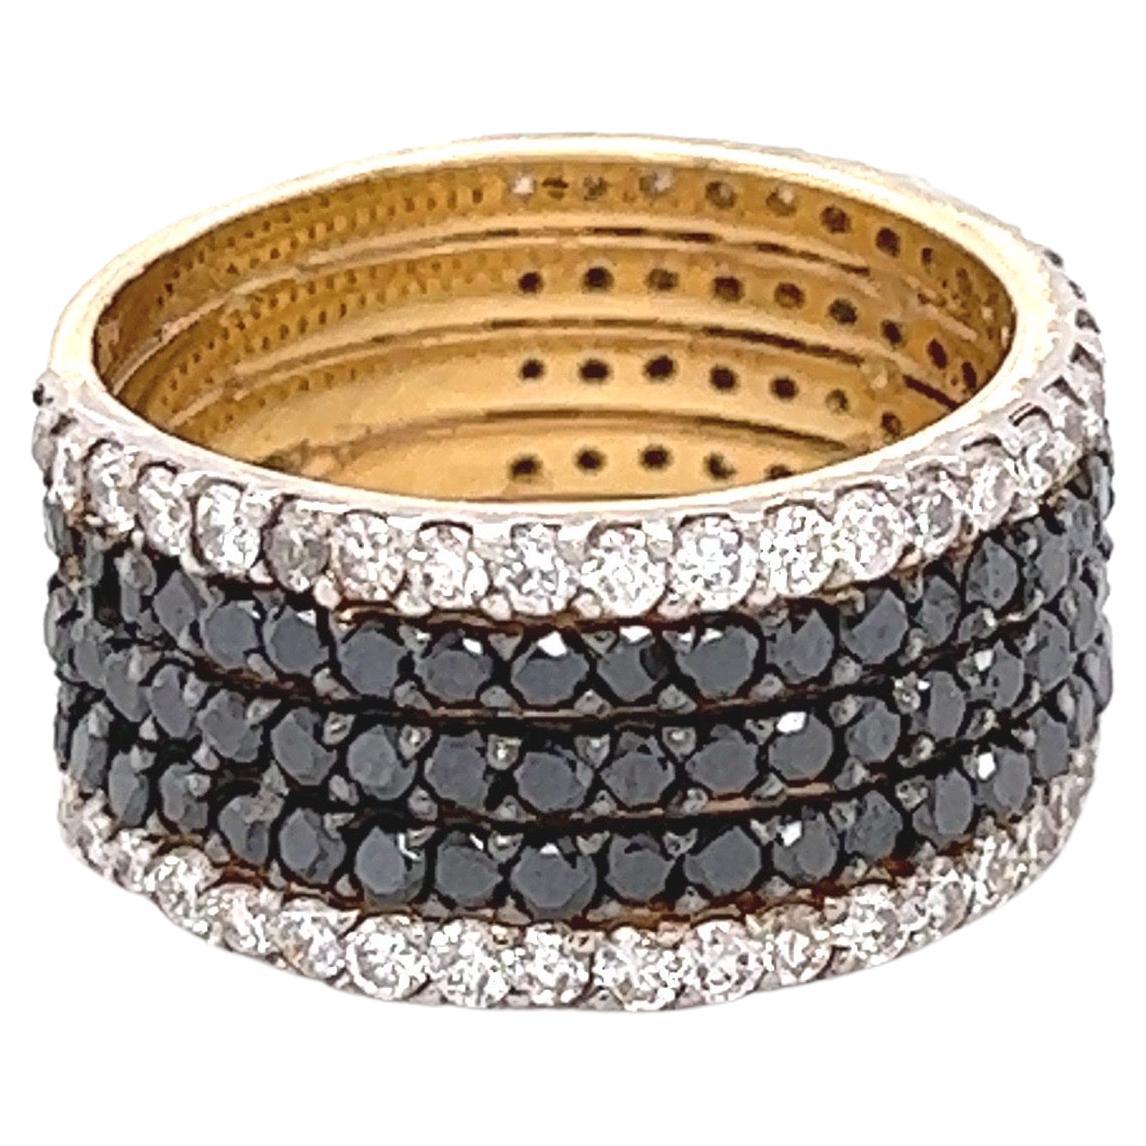 Dieses schwarz-weiße Diamantband ist atemberaubend und vielseitig! Can als Hochzeits- oder Verlobungsring getragen werden, oder als ein wunderschöner Cocktailring oder ein alltäglicher Hingucker! 

Es gibt 90 schwarze Diamanten im Rundschliff mit